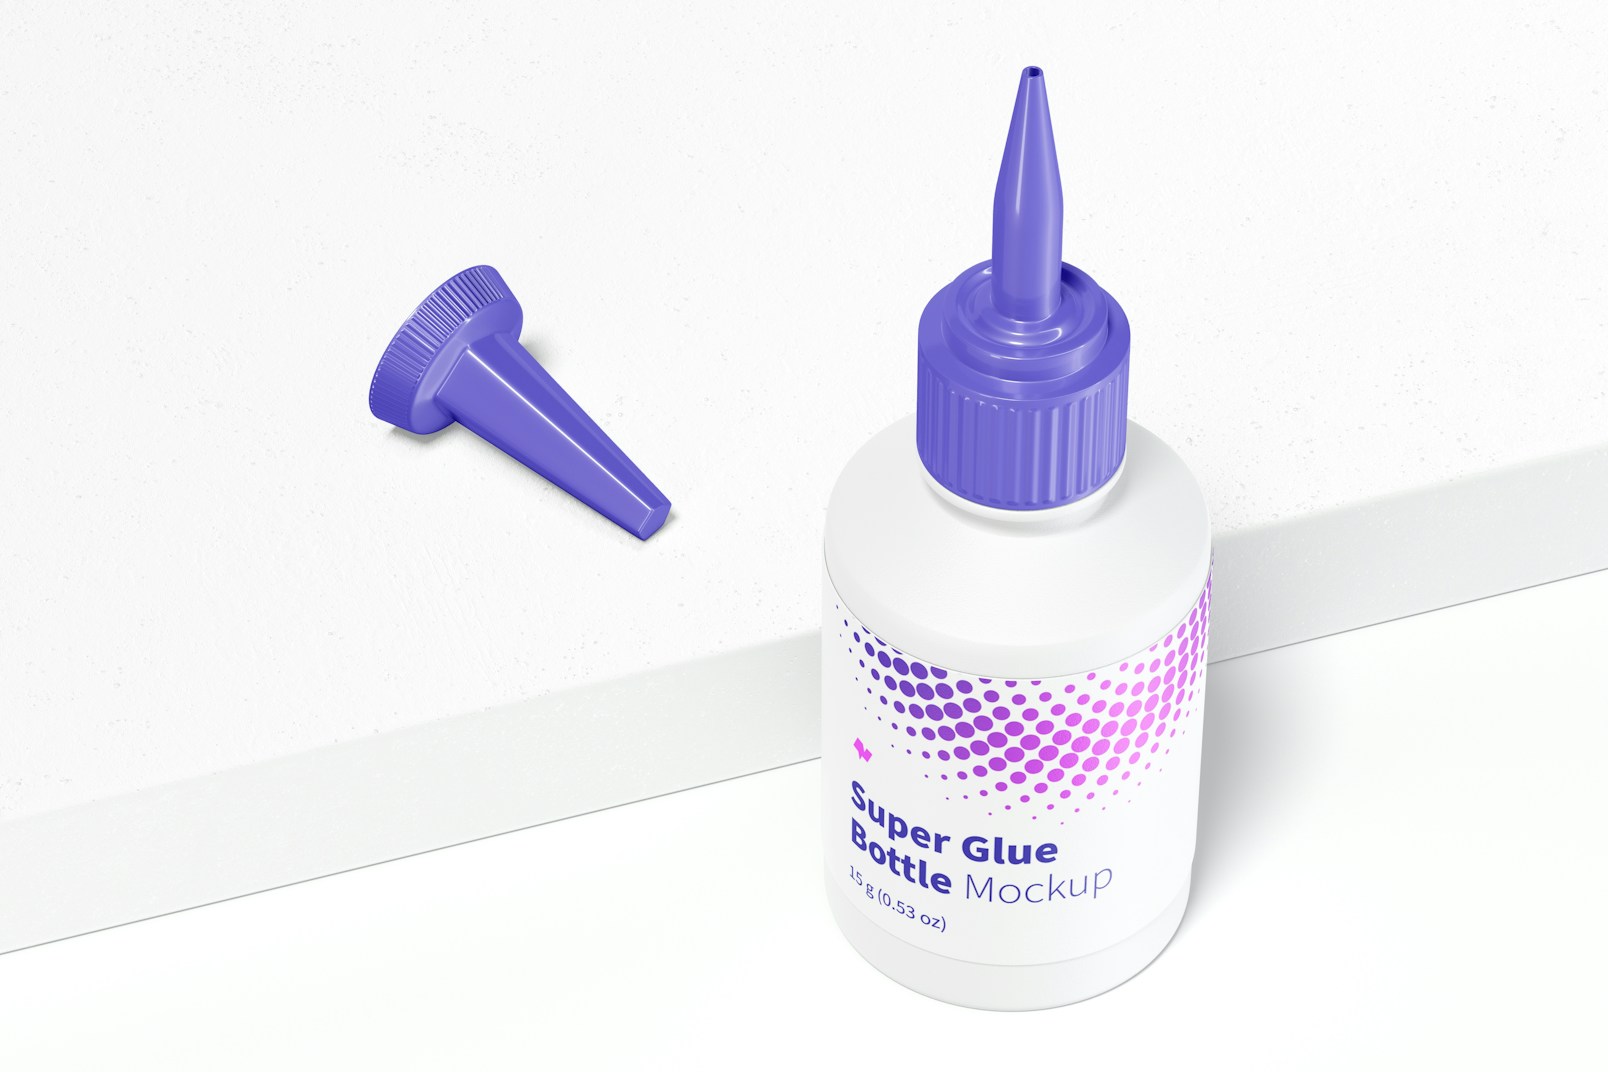 Super Glue Bottle Mockup, Perspective